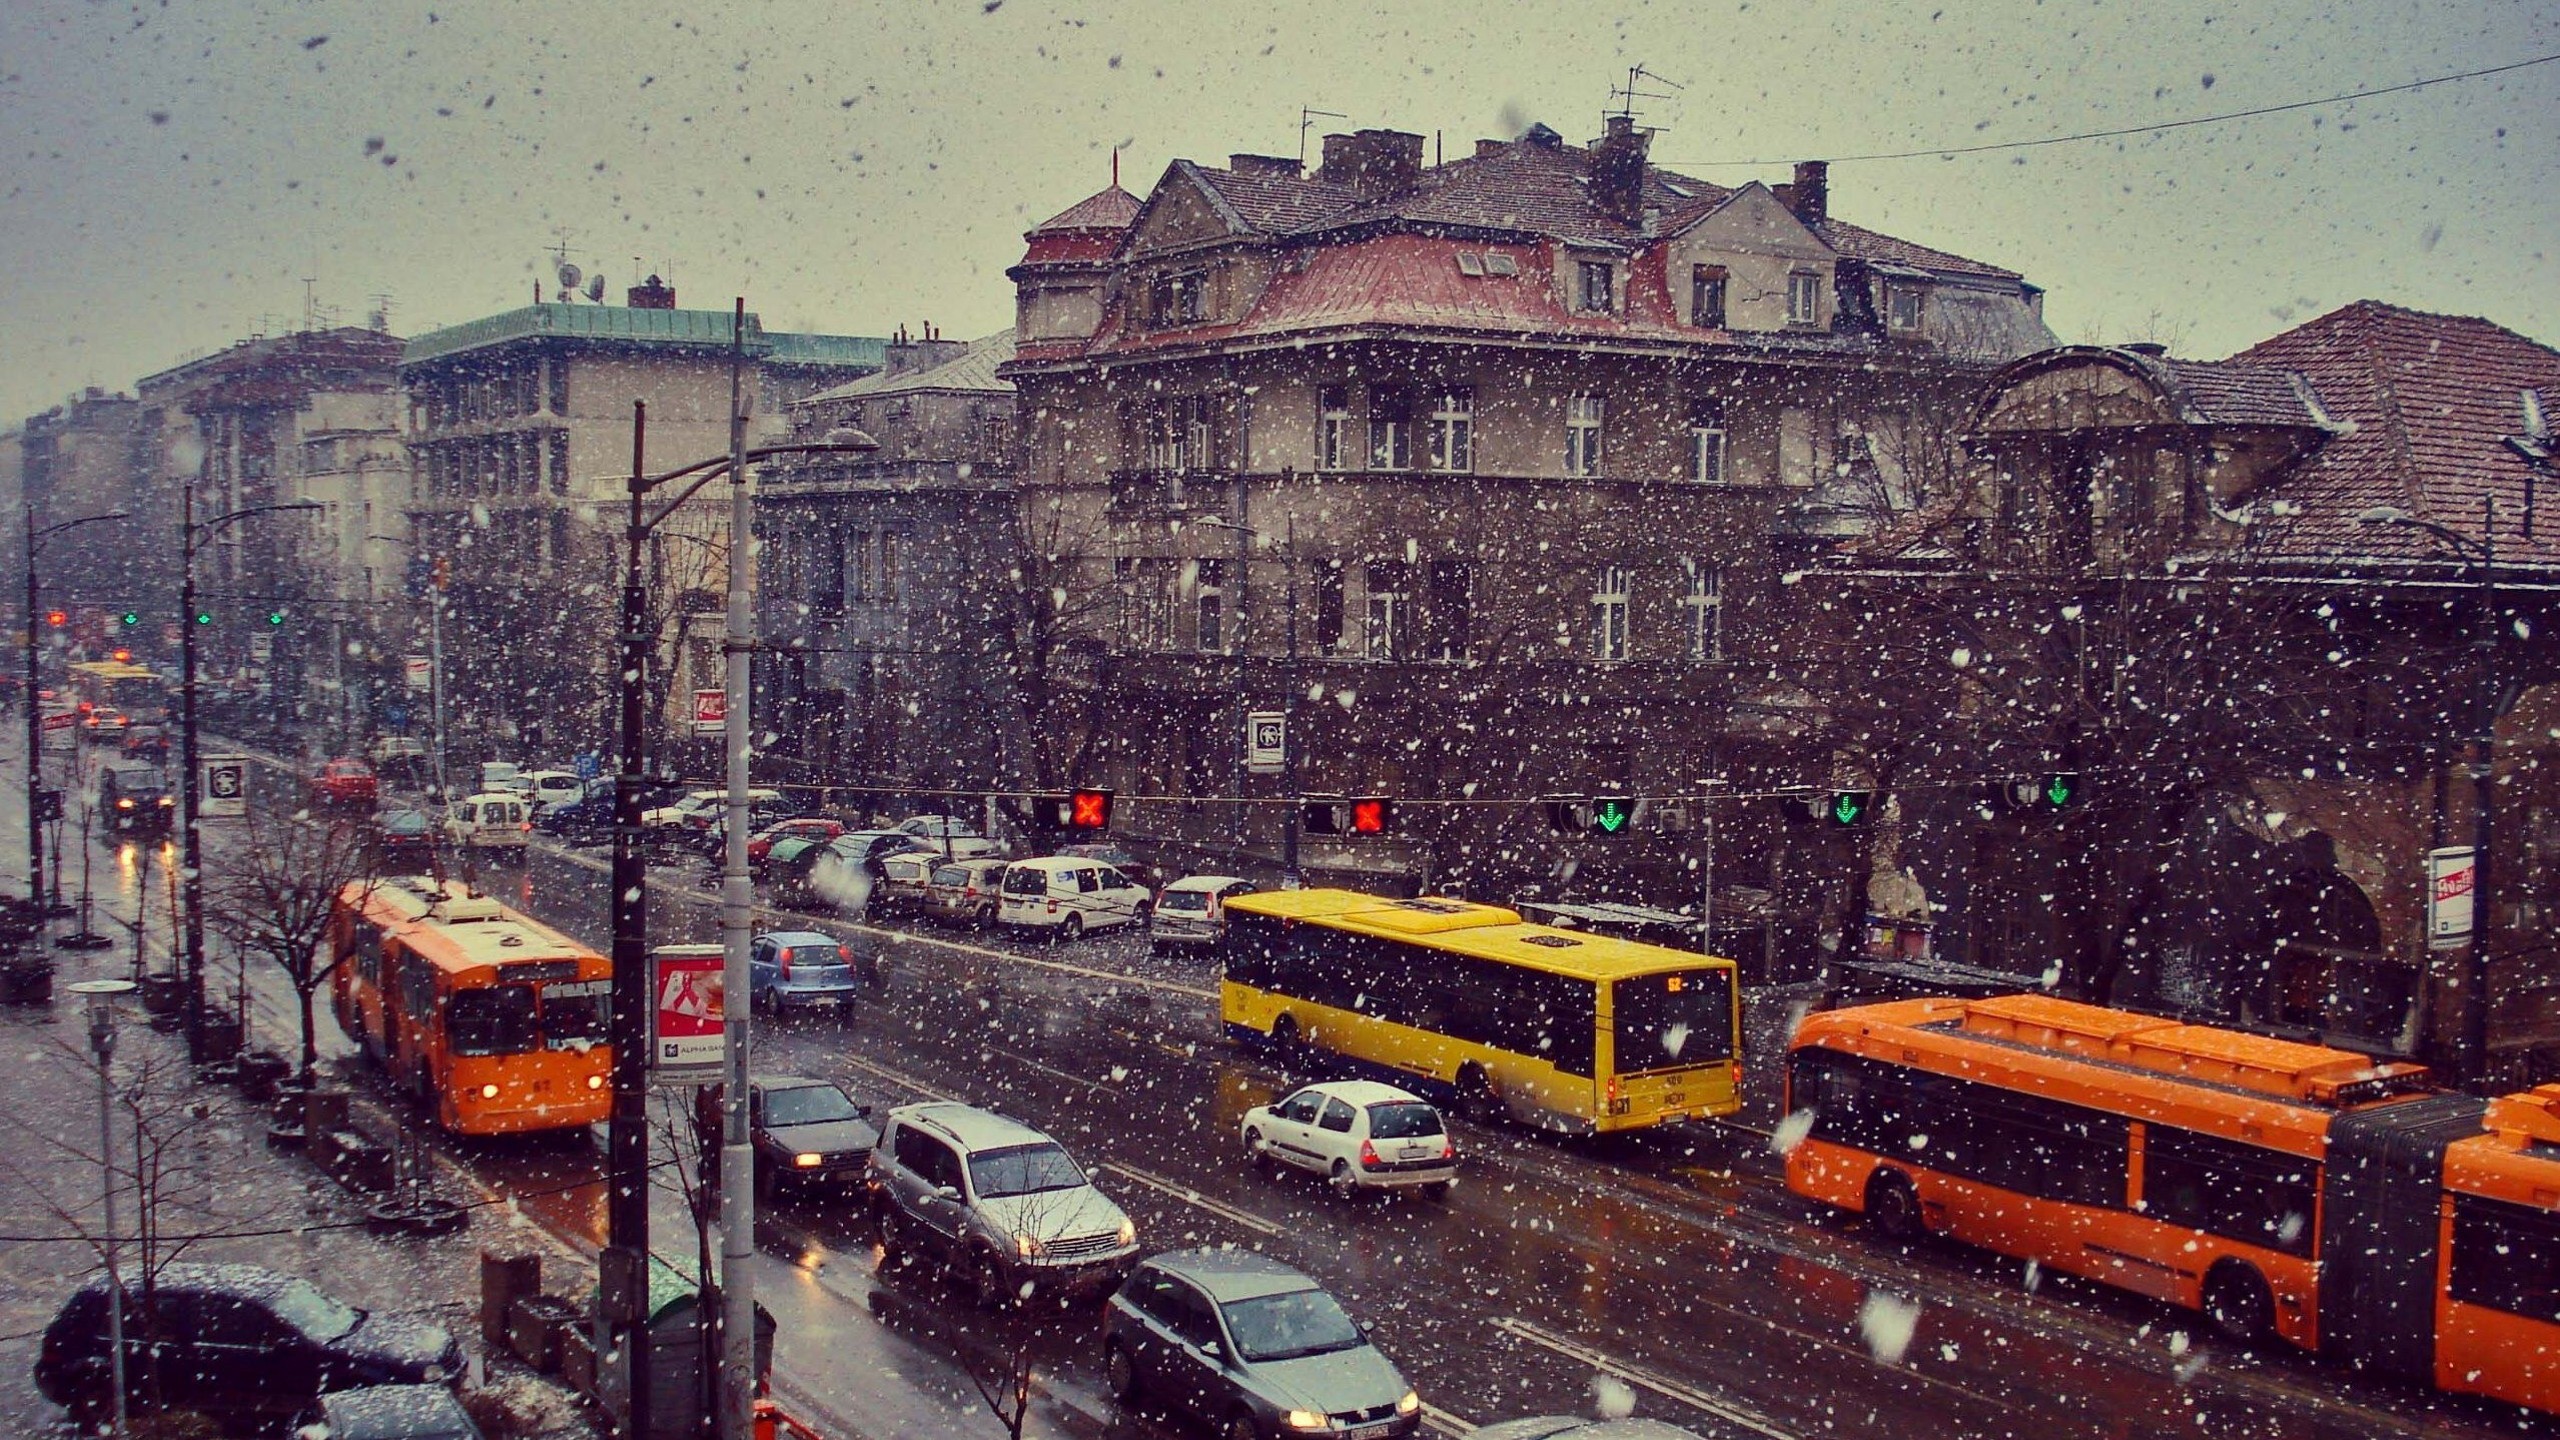 Belgrade Snow City Serbia Car Buses 2560x1440